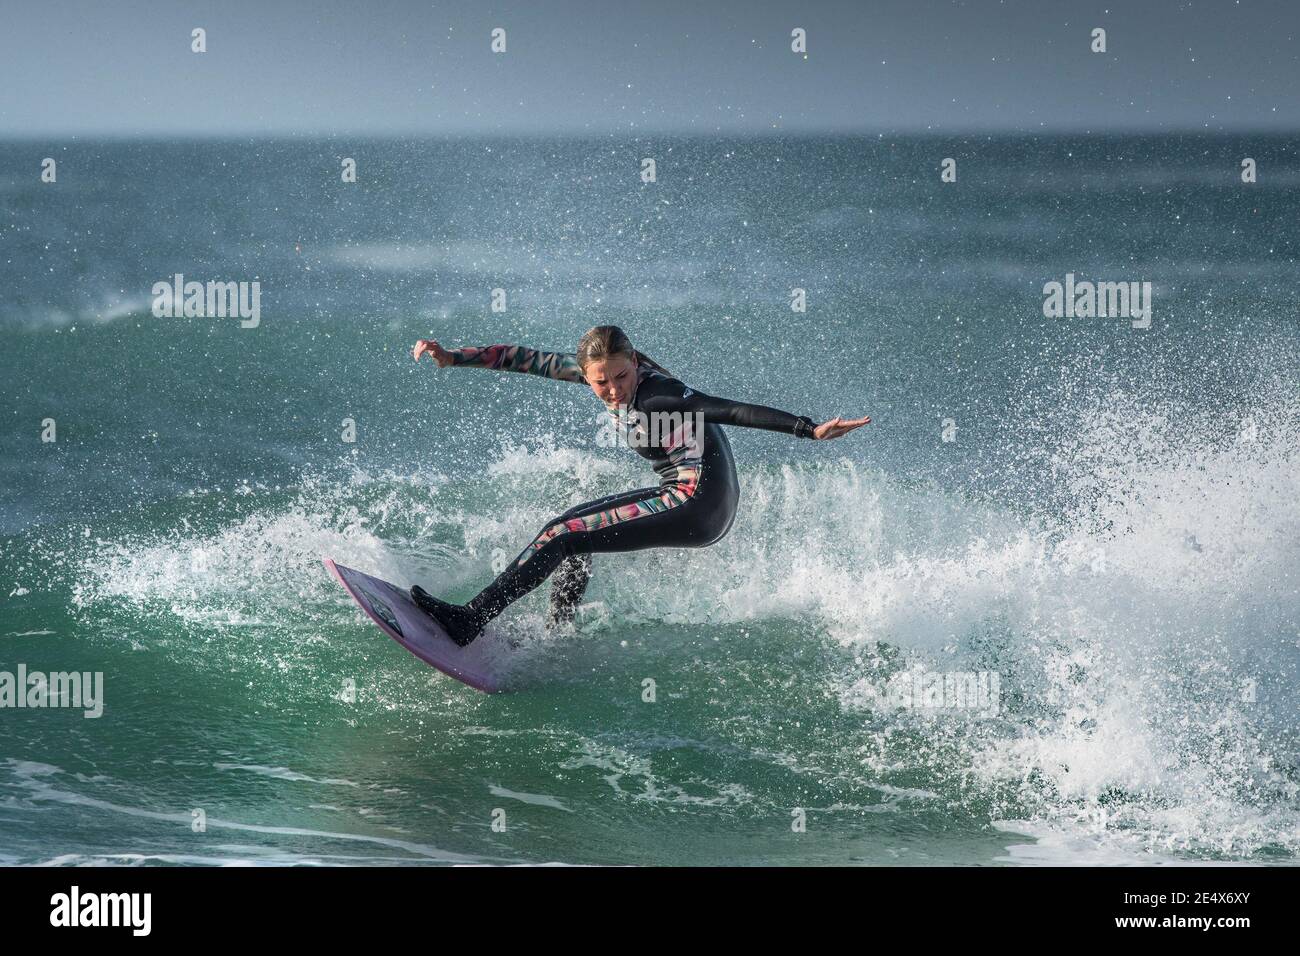 Spettacolare azione di surf come una giovane donna surfer cavalca un wave a Fistral a Newquay in Cornovaglia. Foto Stock